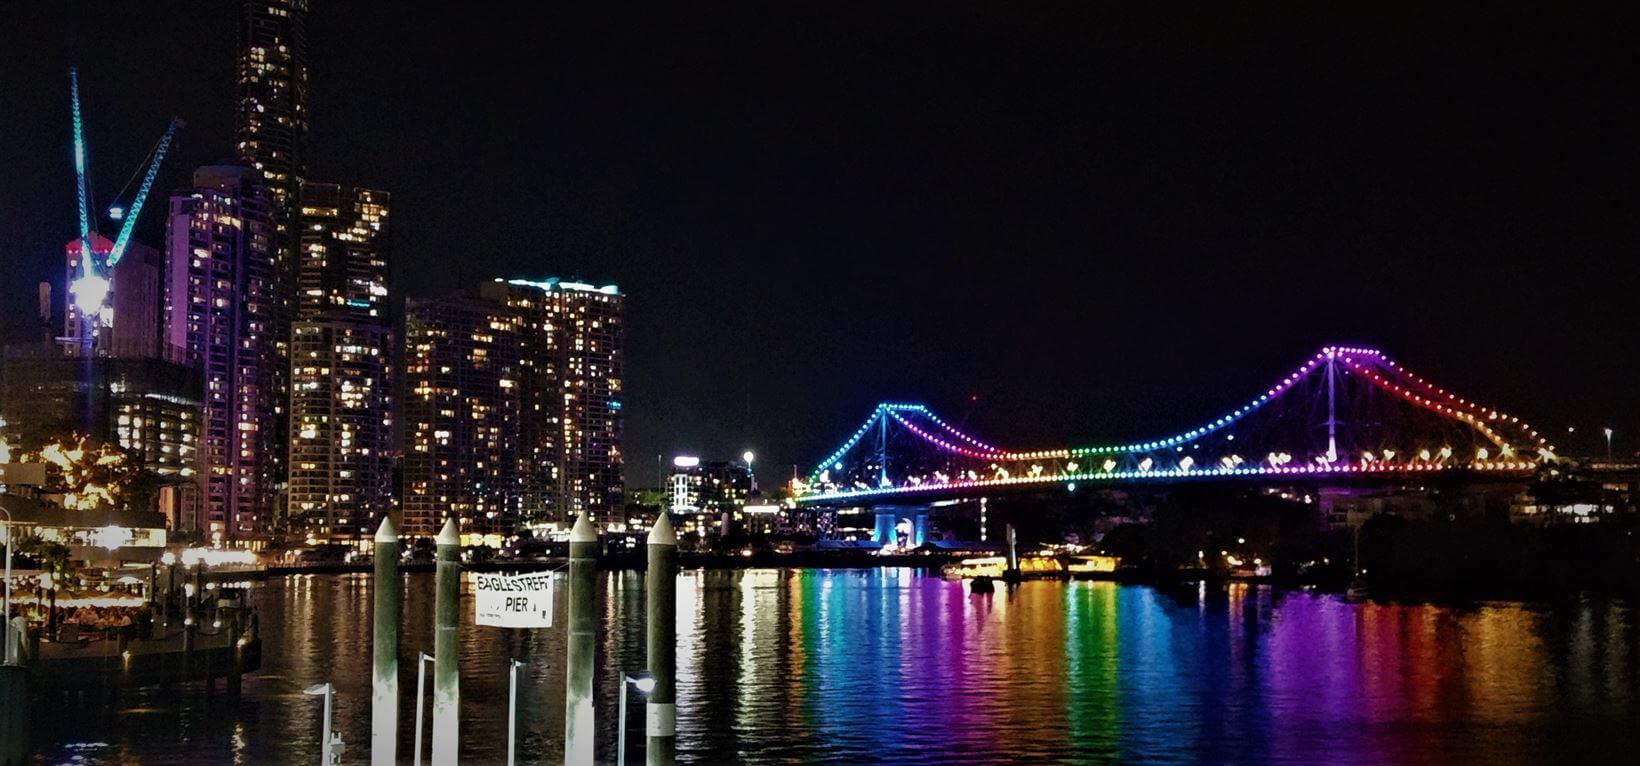 Eagle Street Pier à noite com a vista da Story Bridge iluminada